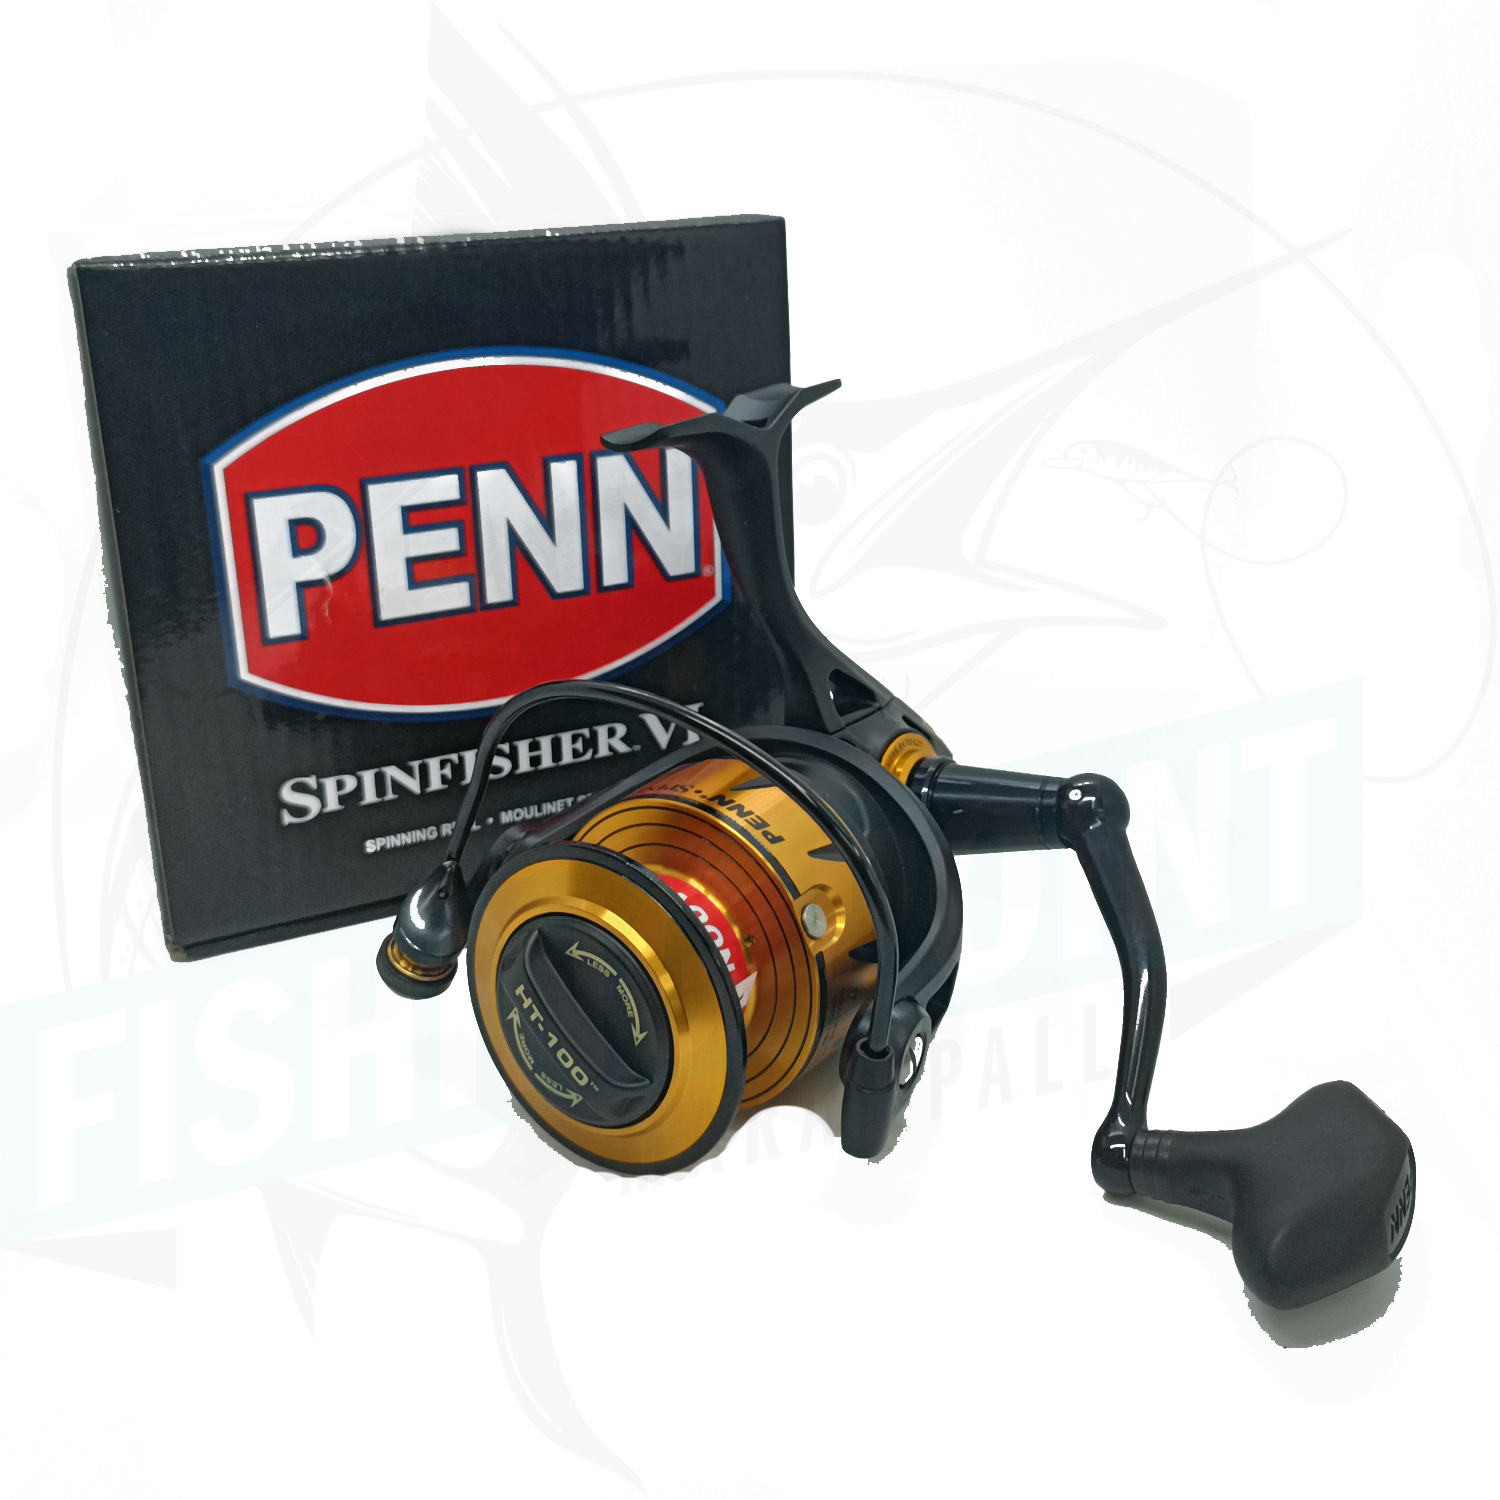 Penn Spinfisher VI 4500 Spinning Reel